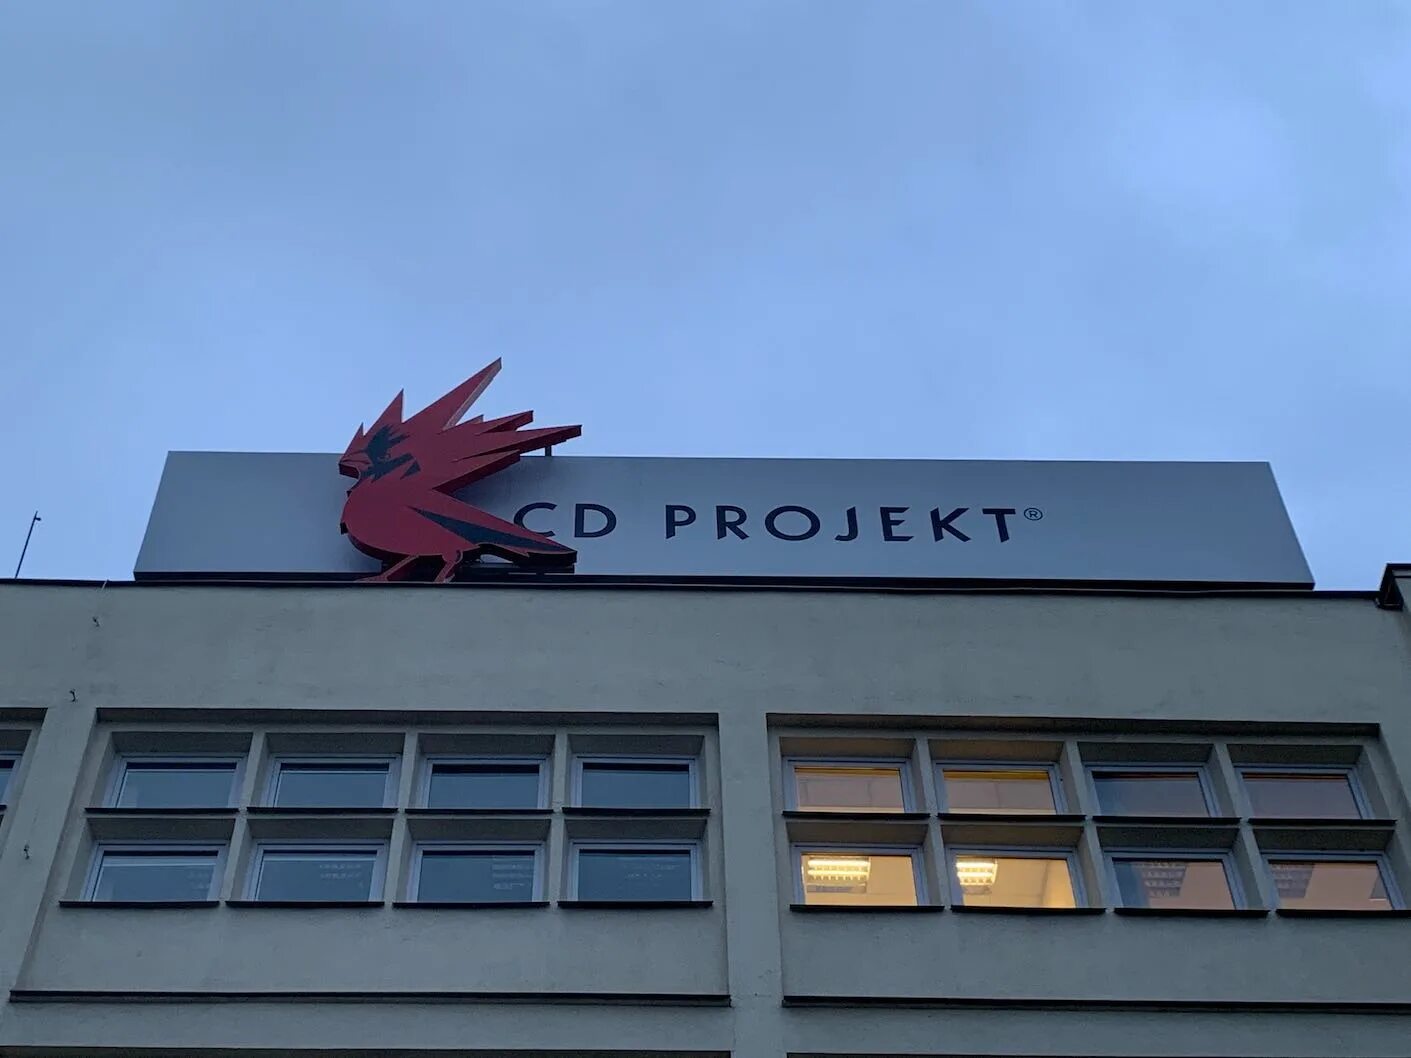 Сд ред. Офис CD Projekt Red в Варшаве. Главный офис CD Projekt Red. Штаб CD Projekt Red. Офис CD Projekt Red в Варшаве снаружи.